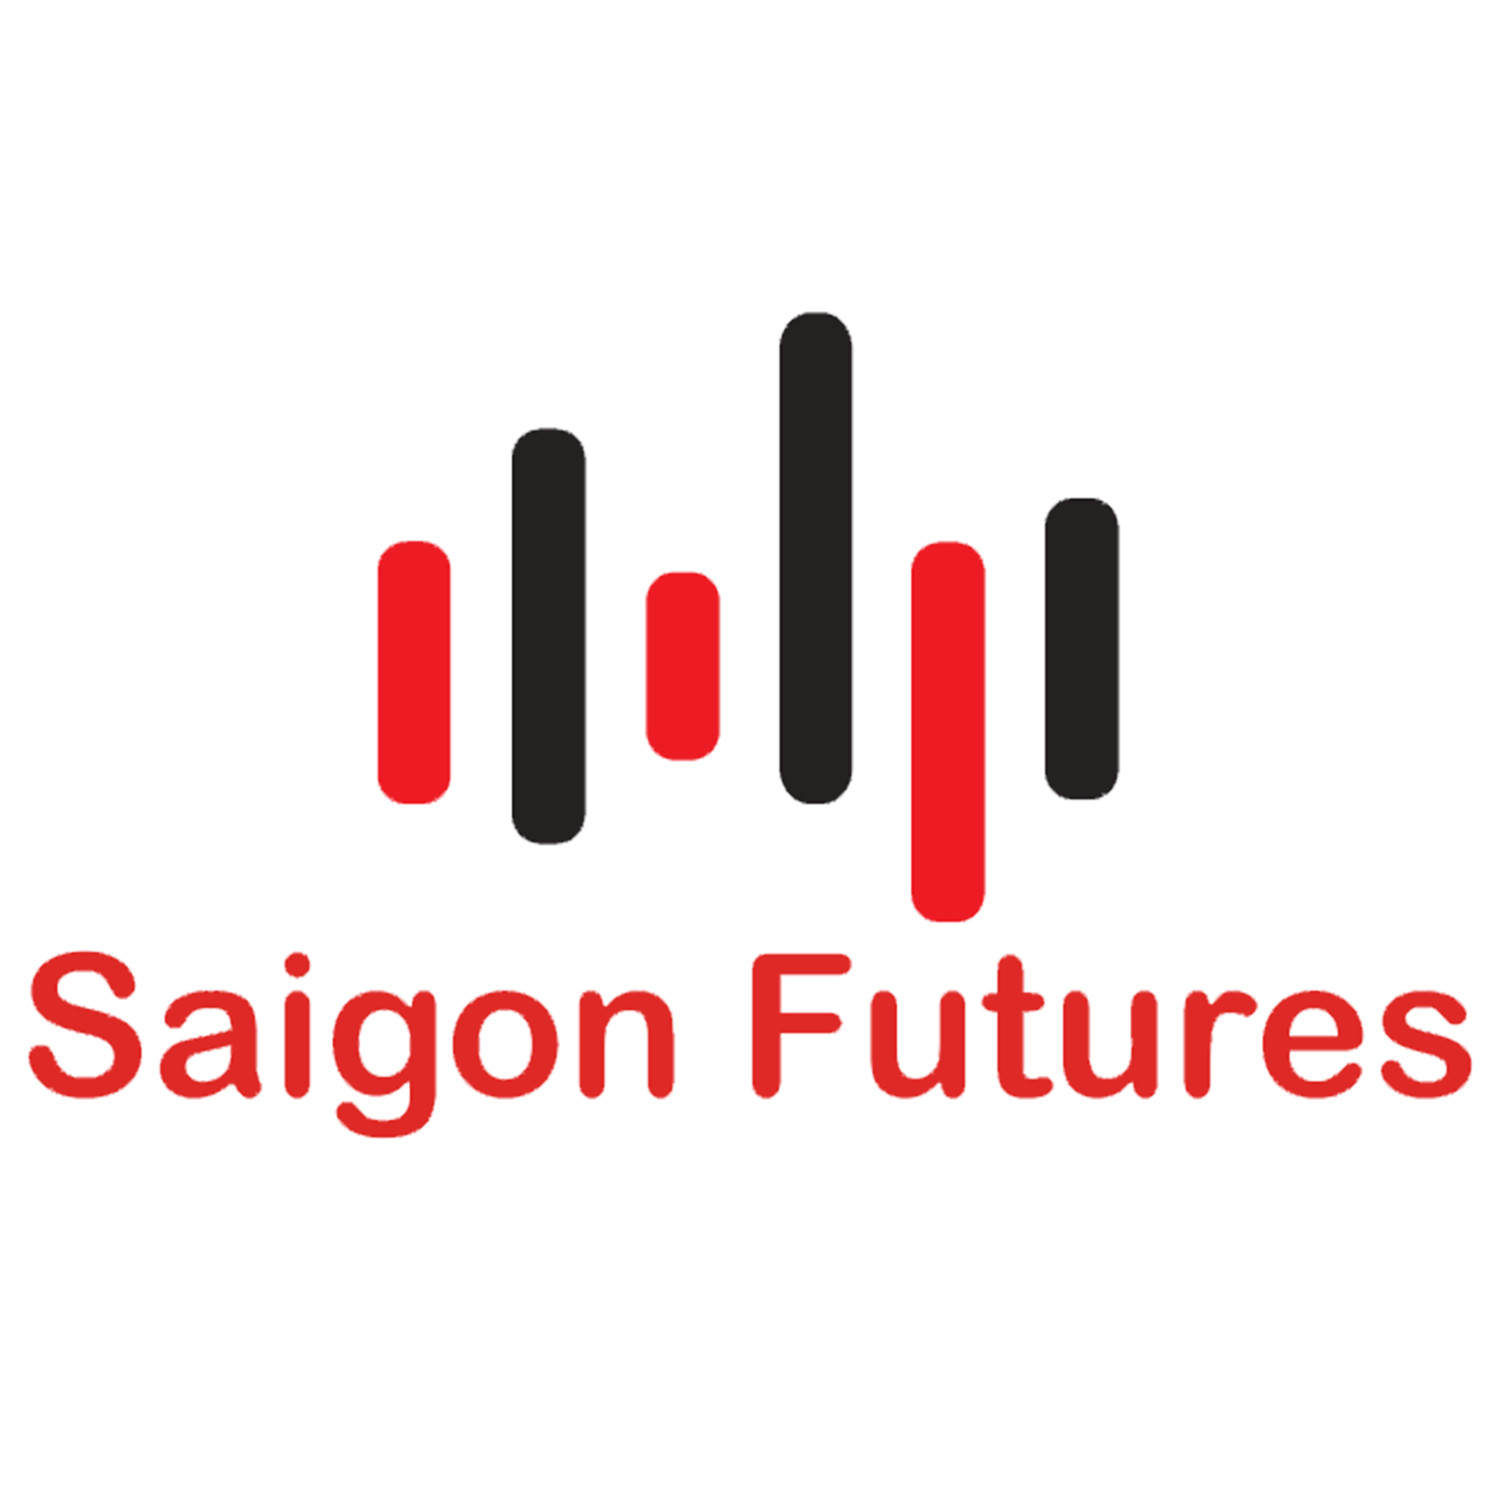 Saigon  Futures (saigonfutures)